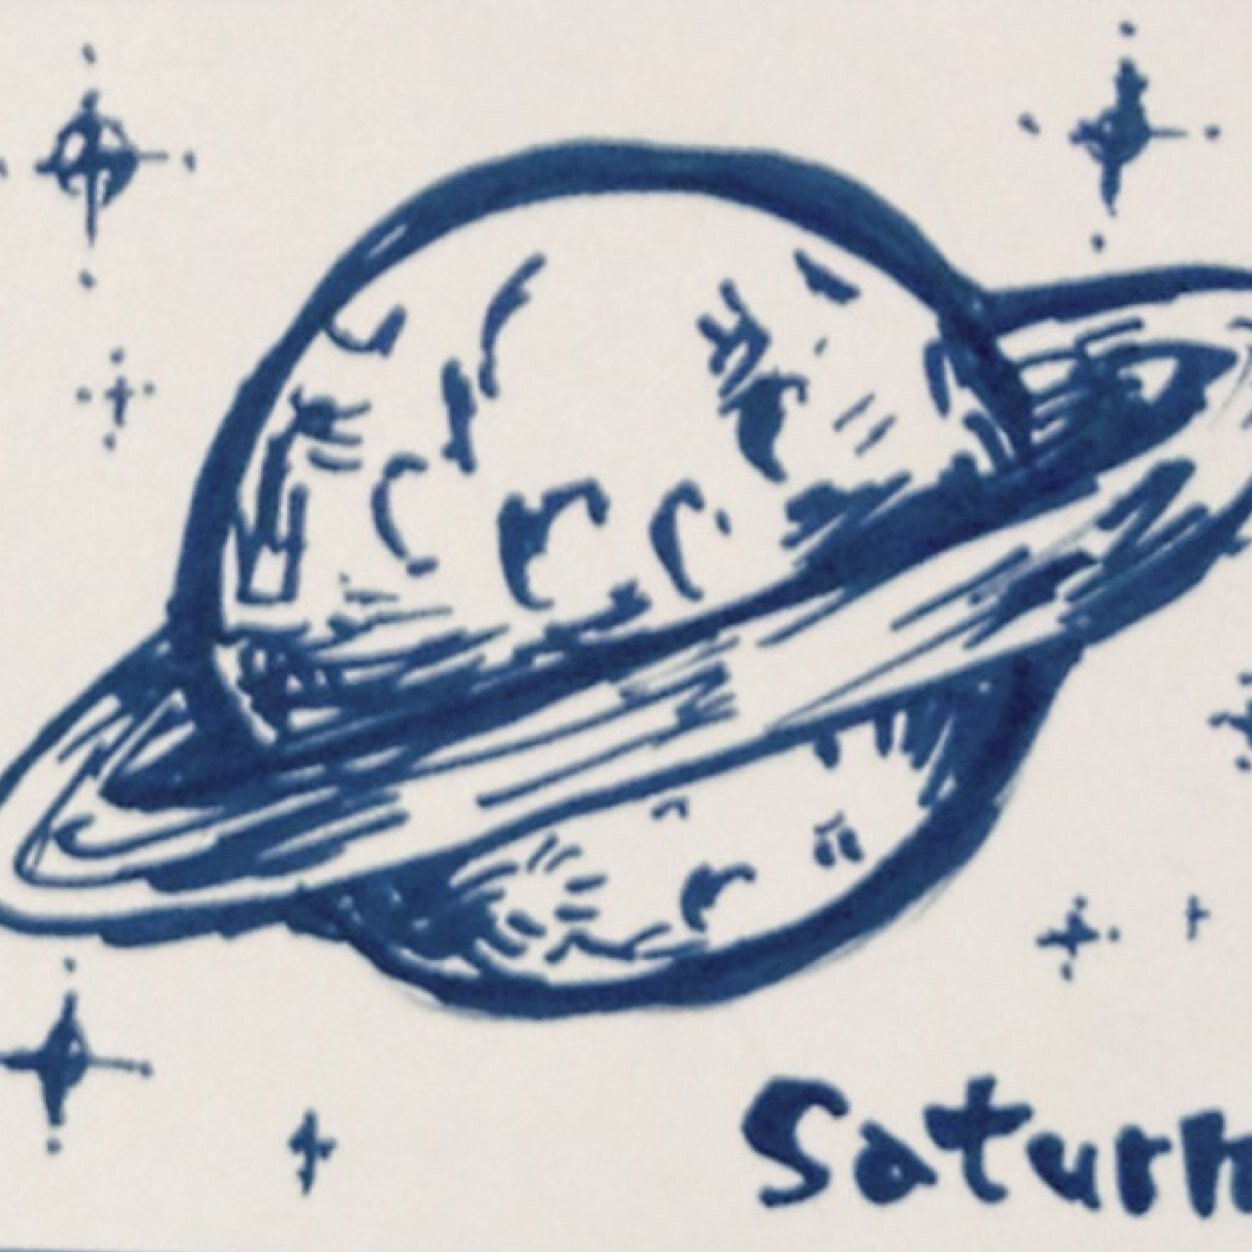 天文サークルSIRIUS（非公認）2019年度は月曜日の18:00 から活動しています！鴨川で天体観測をしたり、プラネタリウムに行ったり、合宿したりなどなど。回生問わず見学希望お待ちしてます！